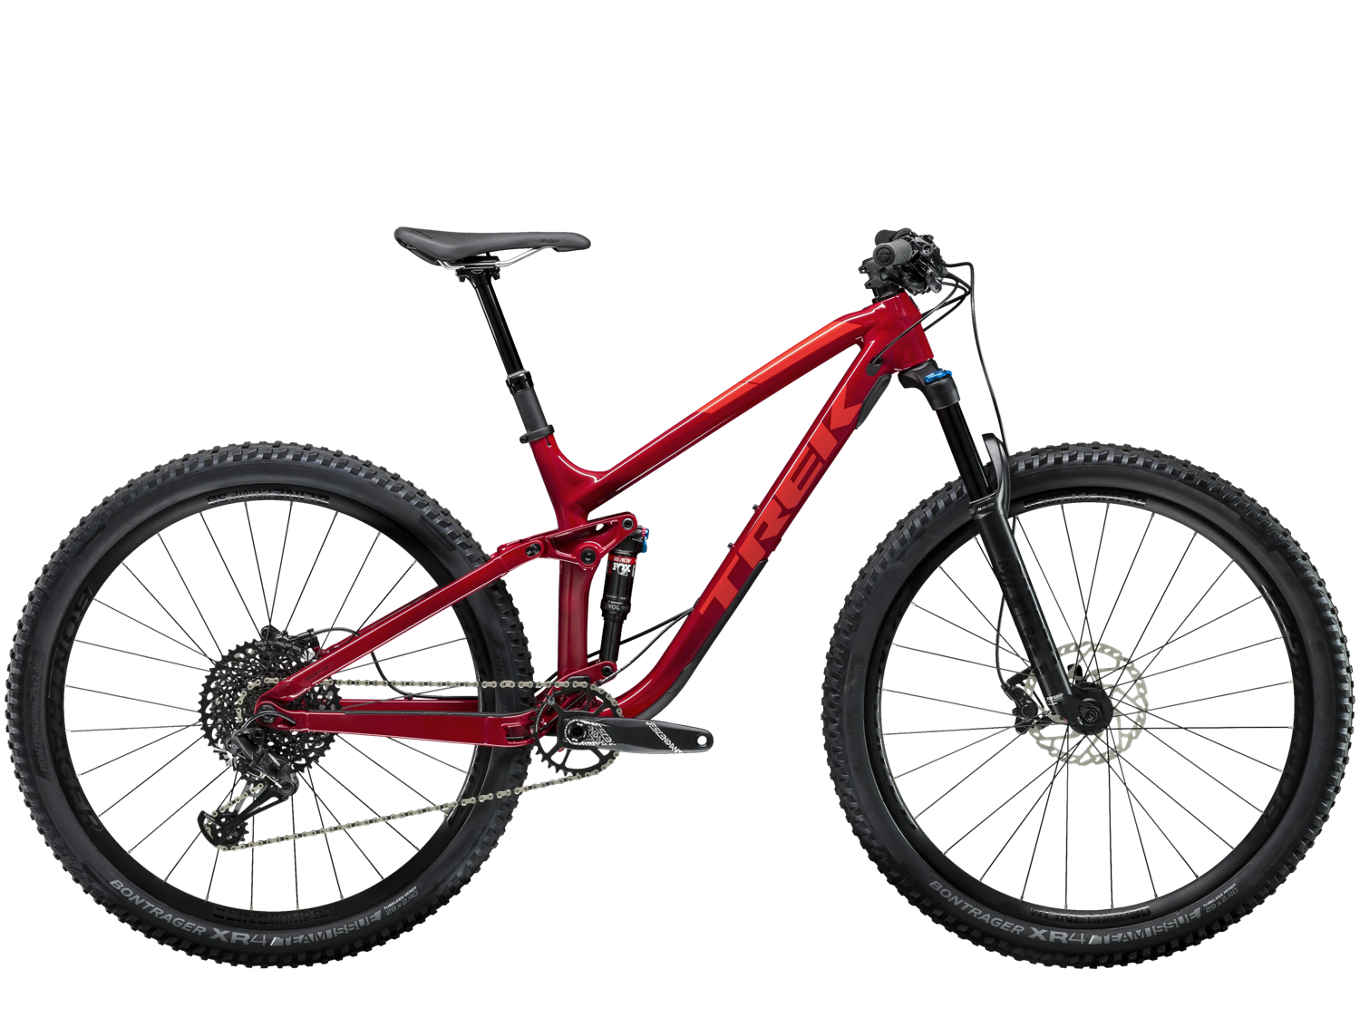 A red Trek mountain bike.